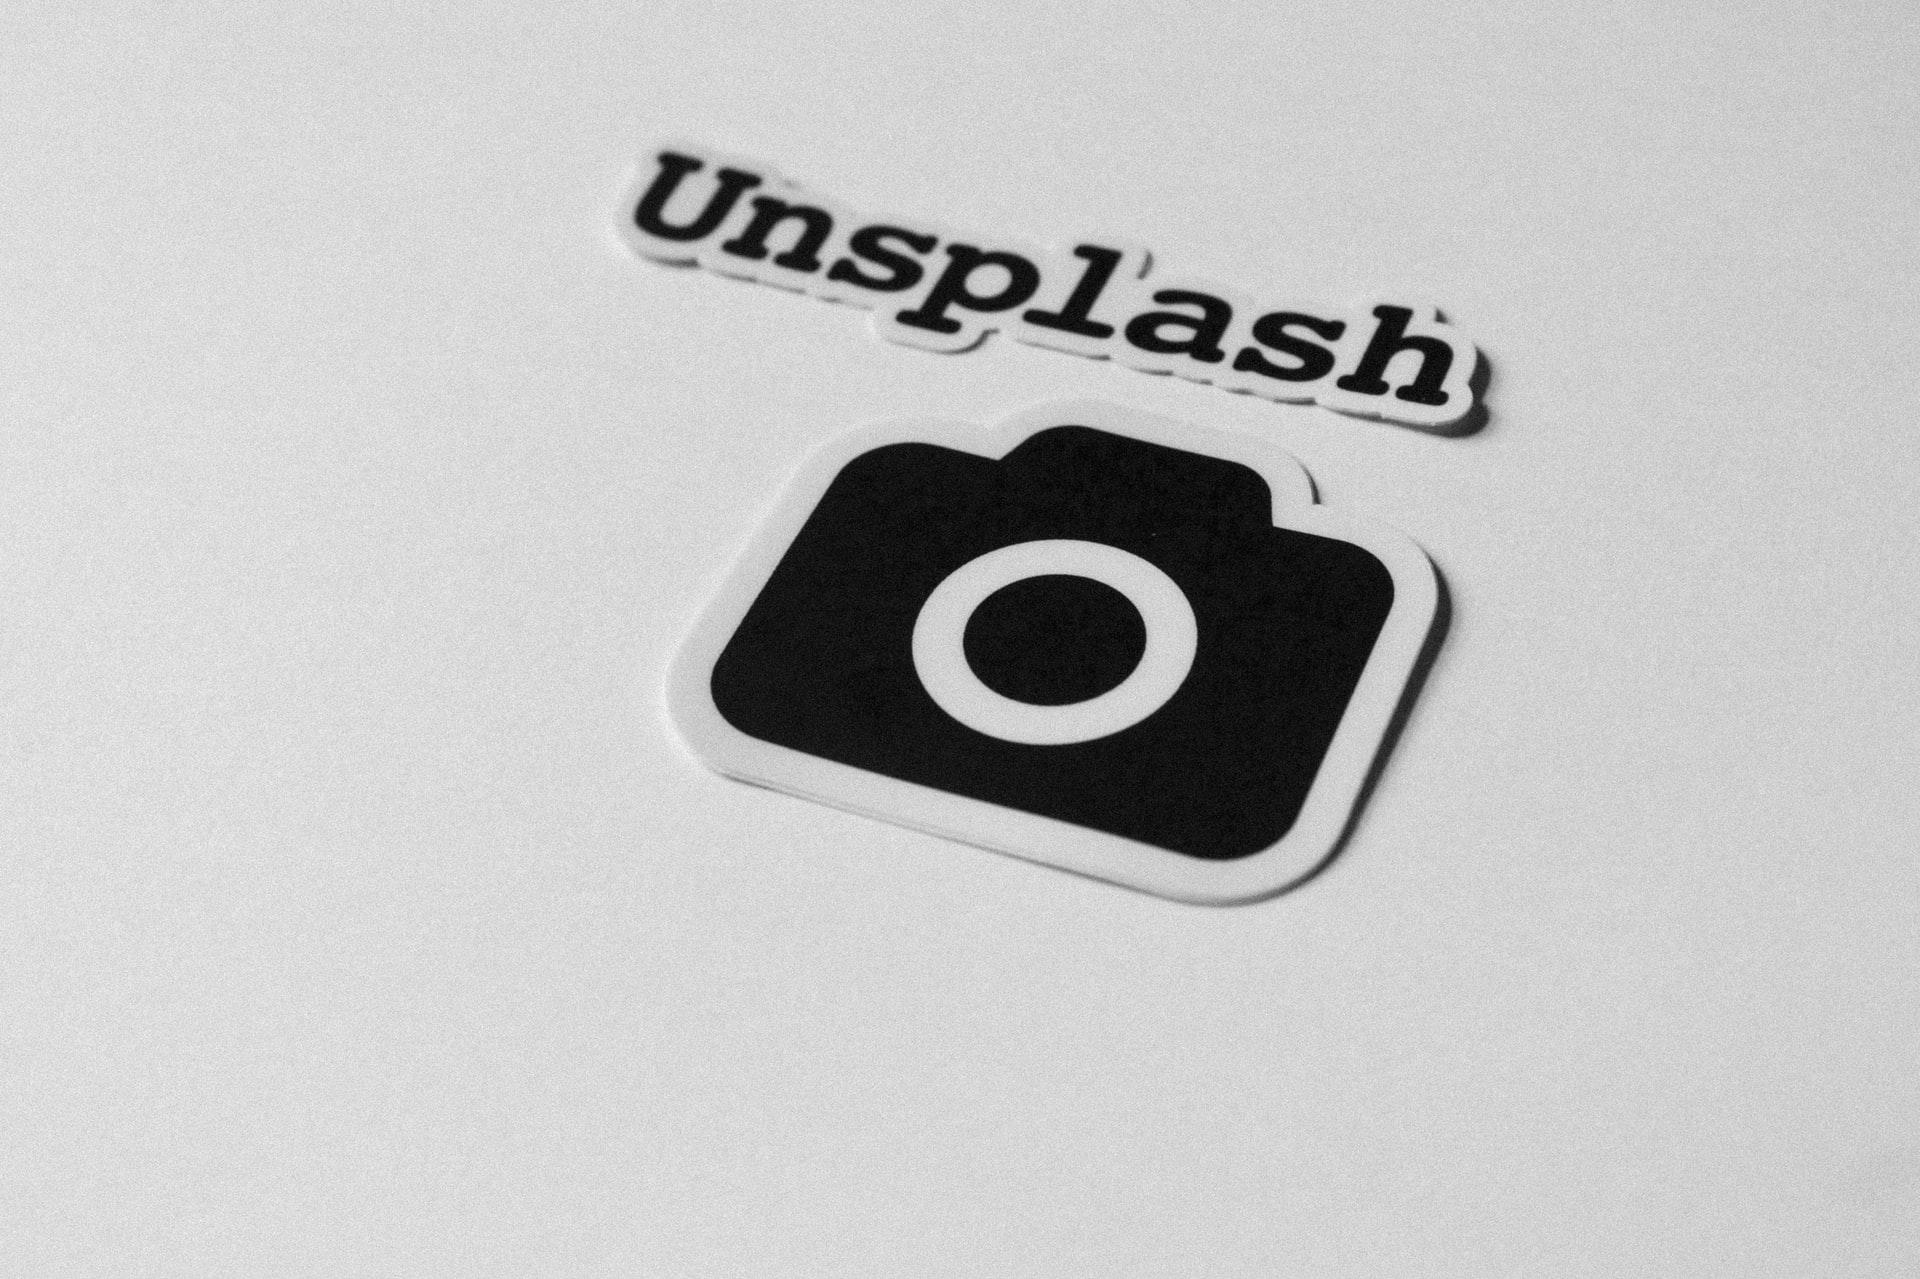 Getty Images kauft Unsplash – „kein Abschied“ vom Geschäftsmodell?